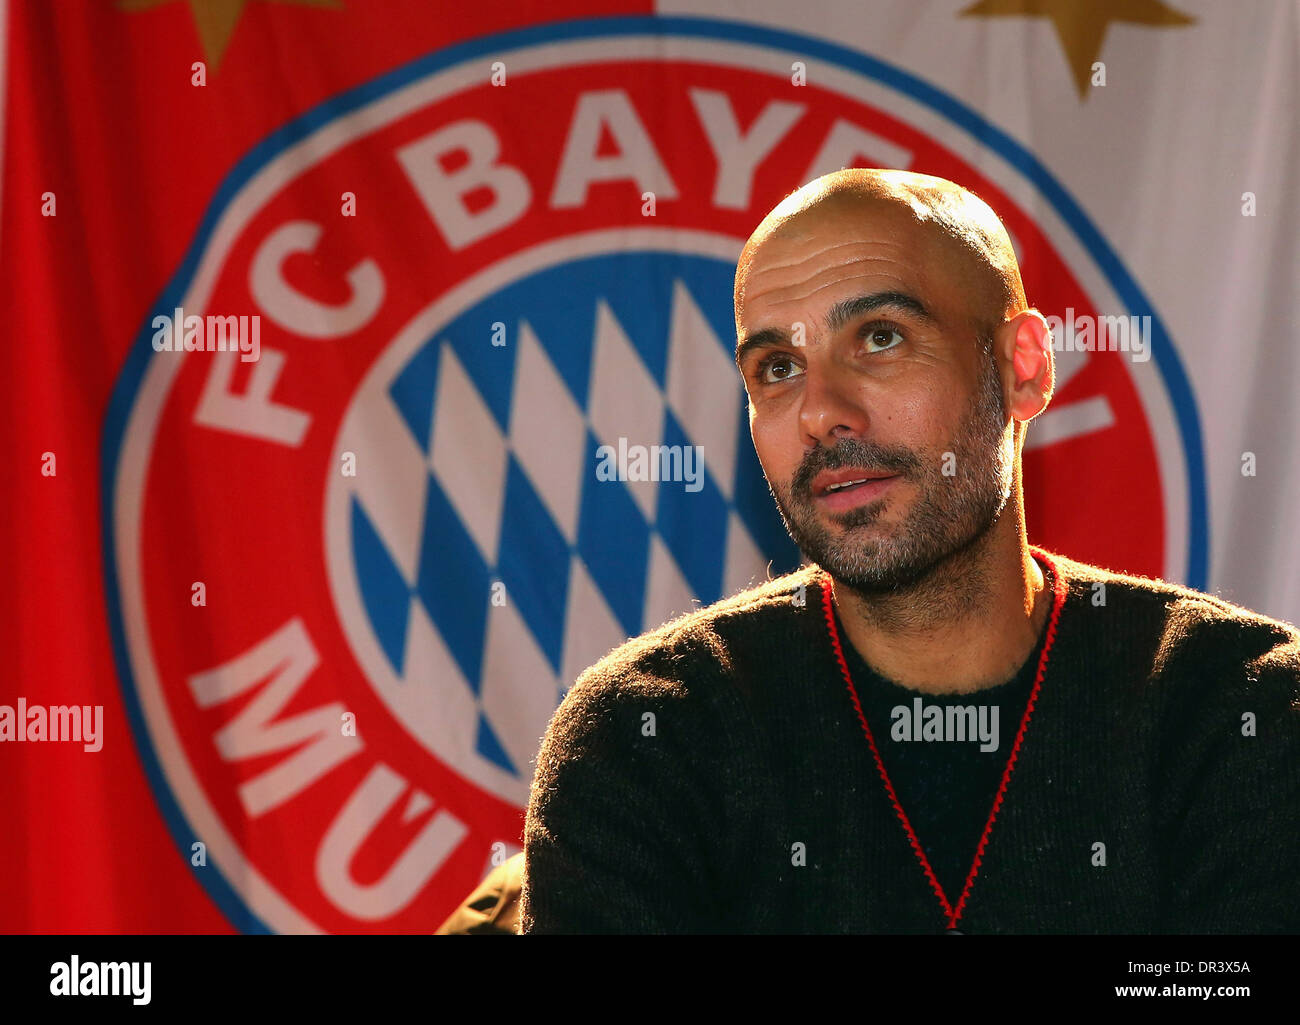 Josep "Pep" Guardiola, Trainer der deutschen Fußball Bundesliga Club FC Bayern München vor dem Club-logo Stockfoto